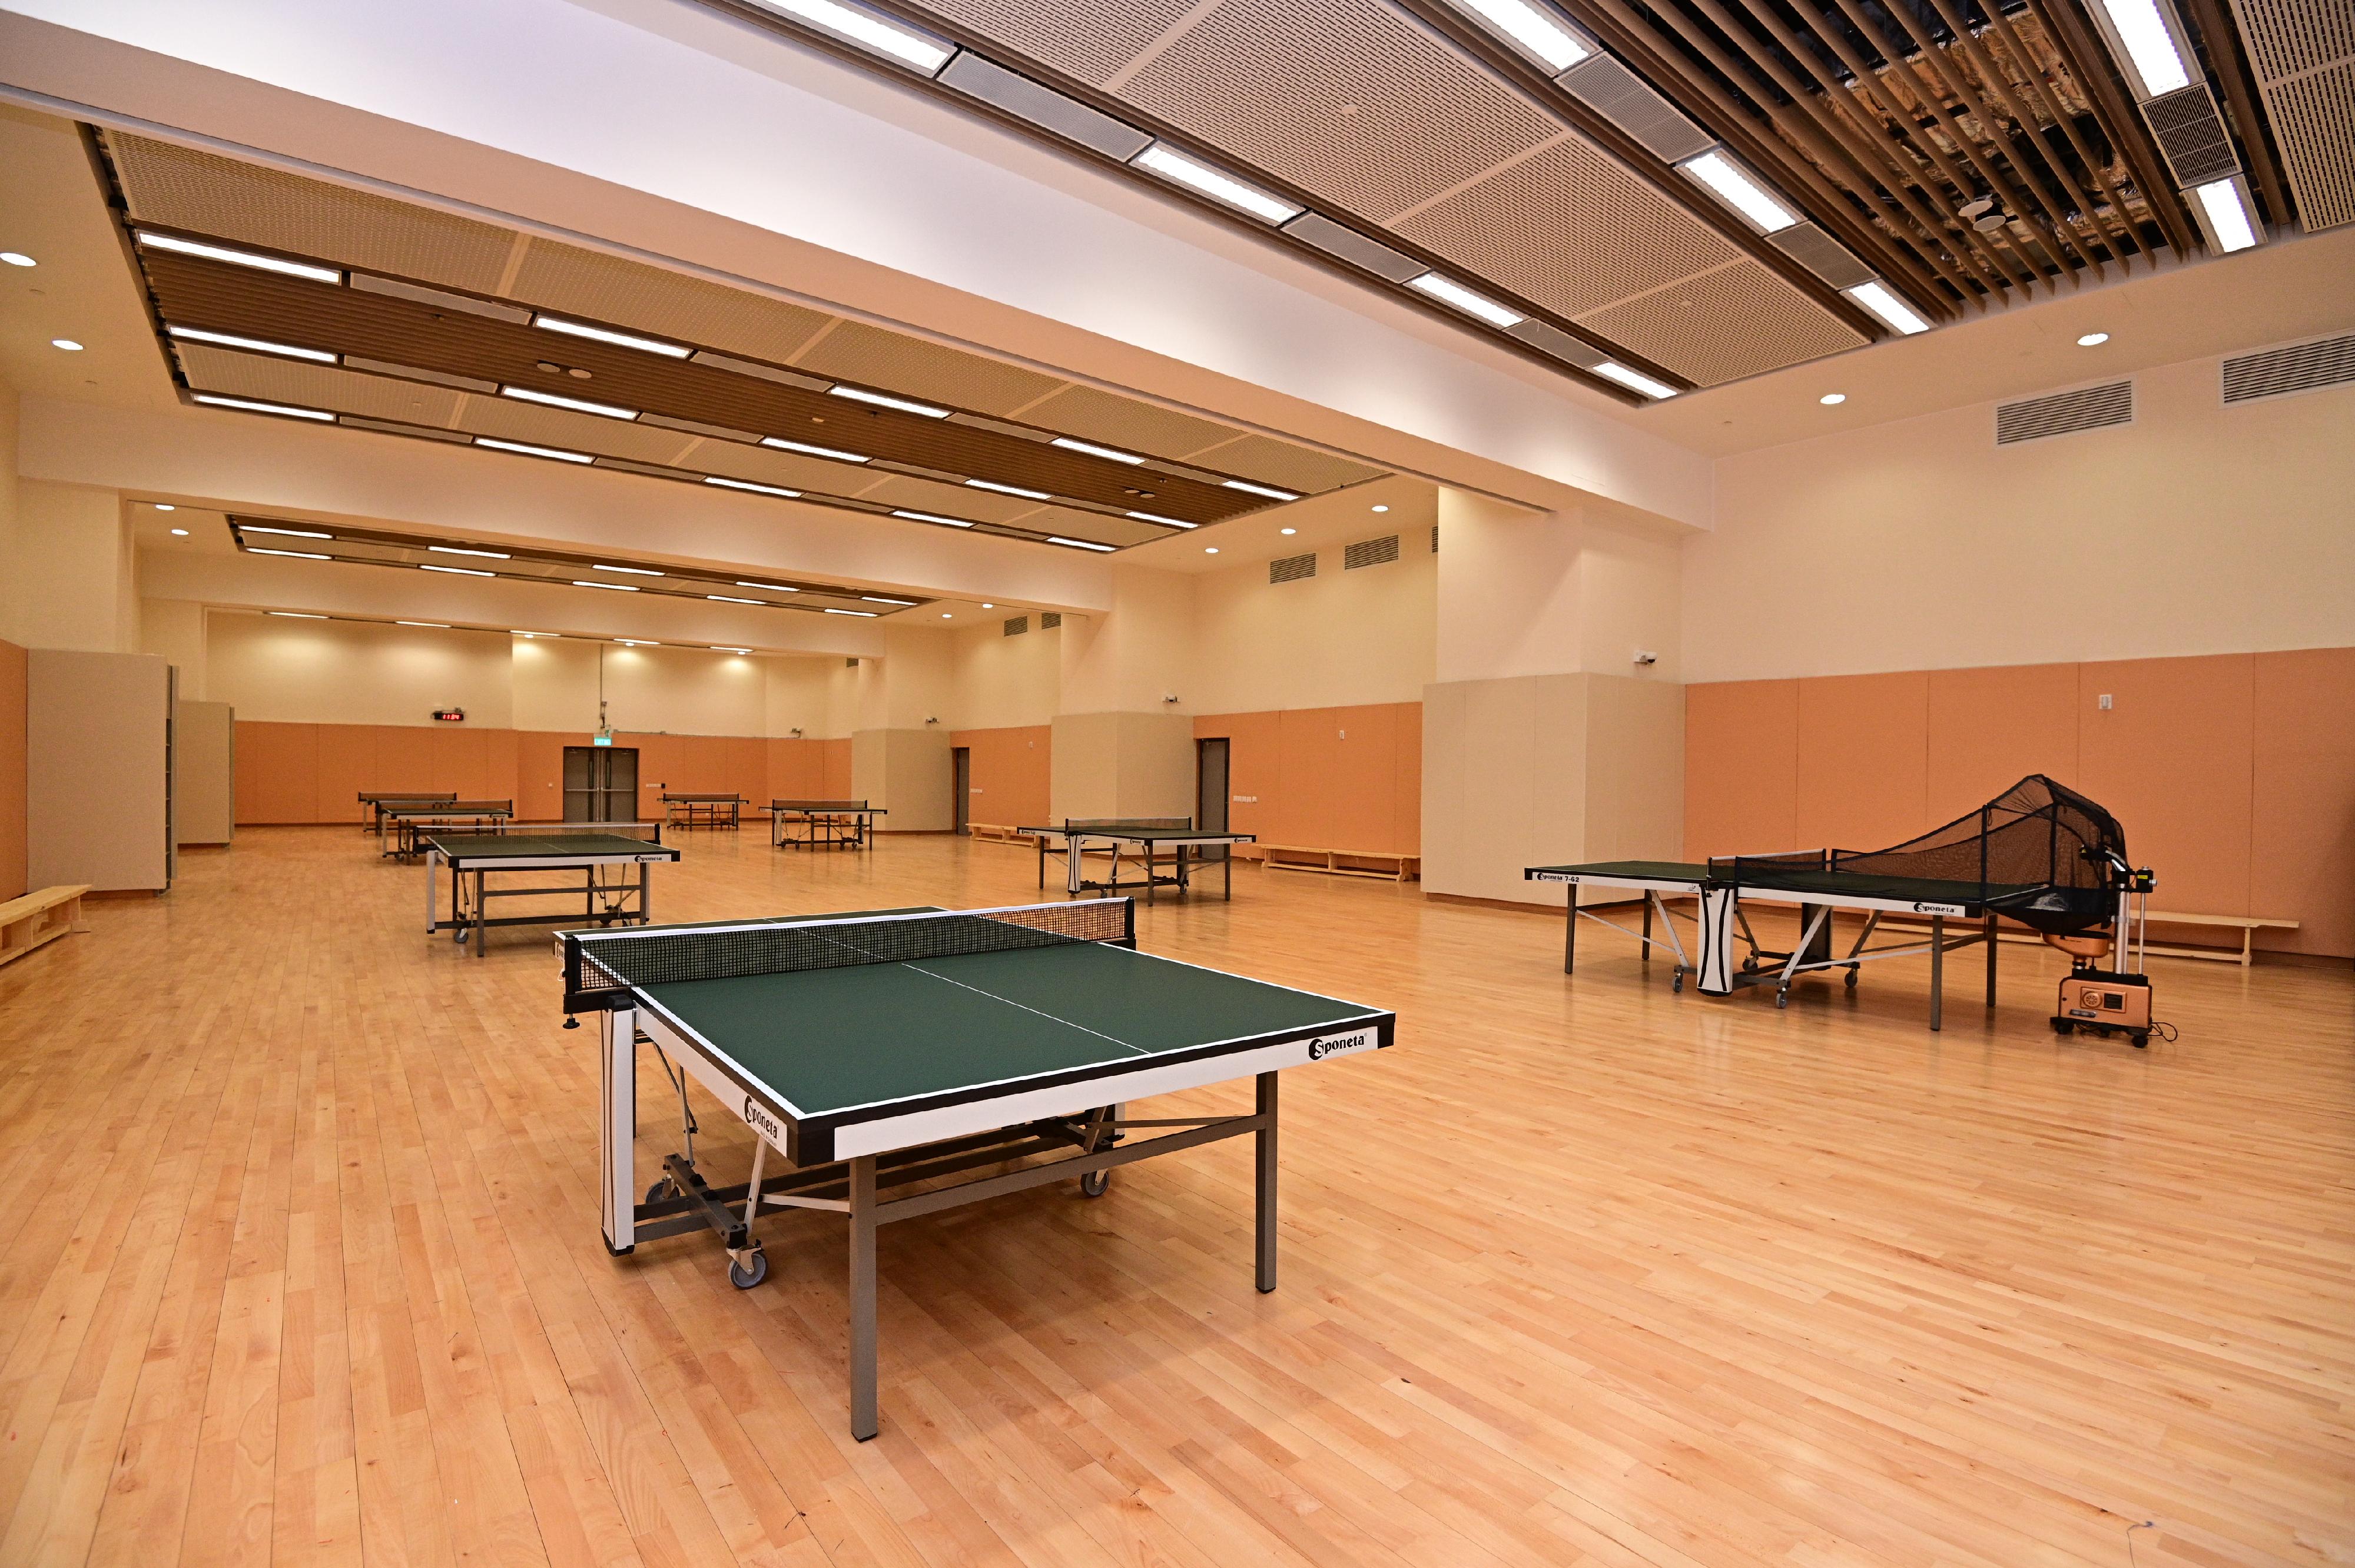 康乐及文化事务署辖下新落成的彩荣路体育馆十二月二十九日（星期三）起投入服务，提供多样化的康体设施。图示乒乓球室。